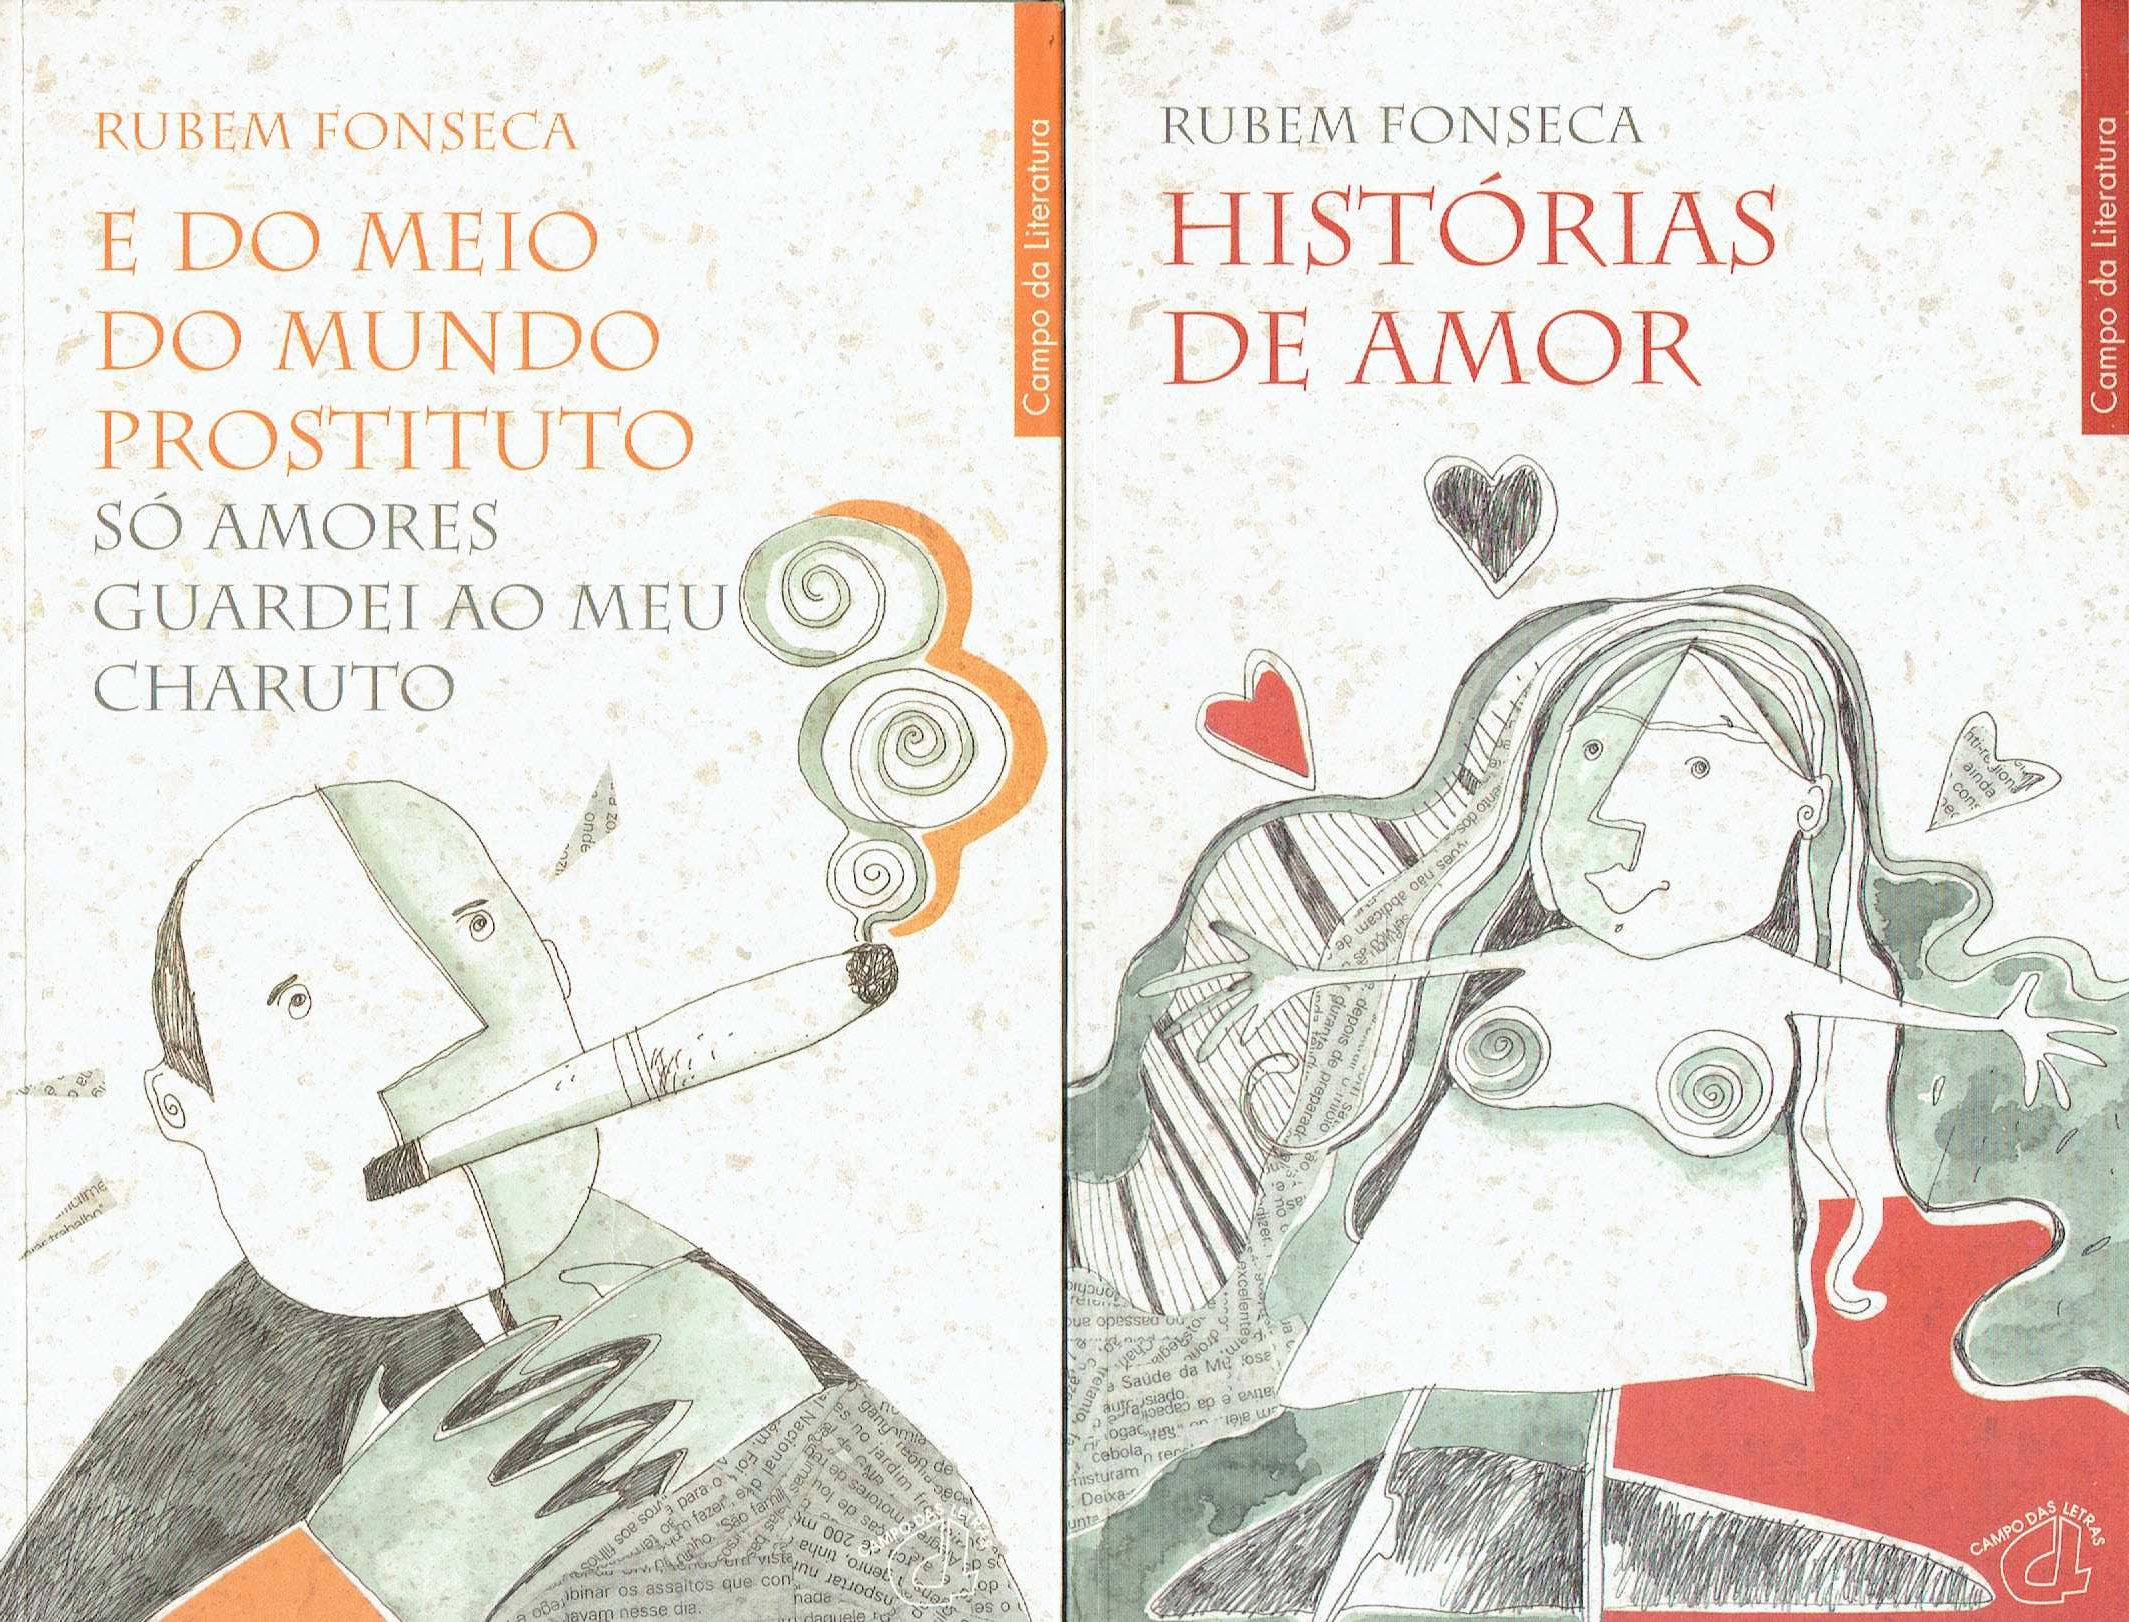 14743
Livros de Rubem Fonseca
E do Meio do Mundo Prostituto só Amores